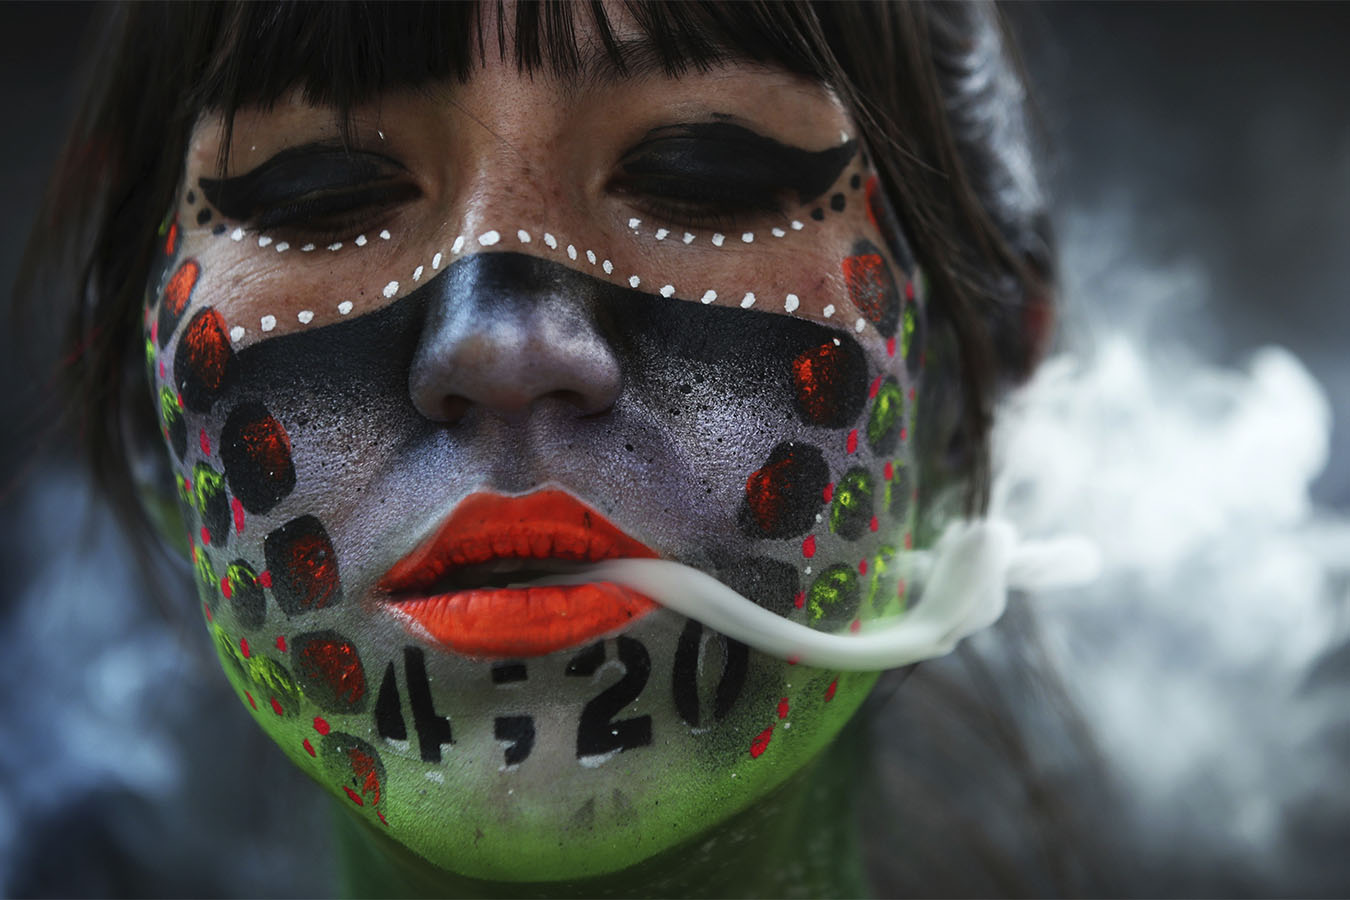 אנה מנדז קאסטנדה מעשנת מריחואנה במהלך הפגנות בעד ליגלצזיה של מריחואנה מחוץ לסנאט במקסיקו סיטי. ה-20 באפריל הוא יום בינלאומי ללילגלצזיה. 20 באפריל . (AP Photo/Marco Ugarte)